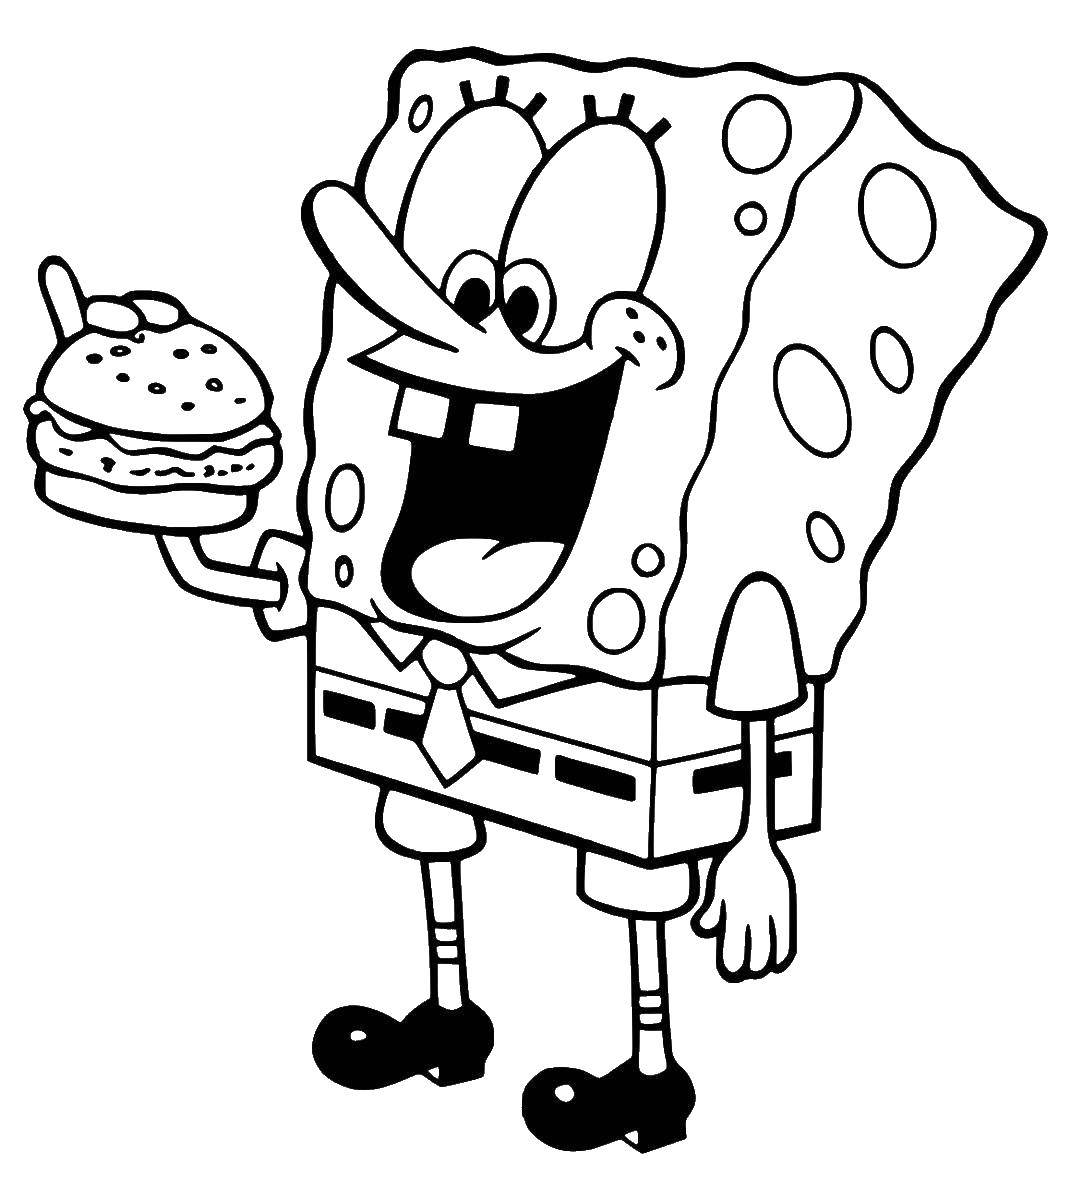 Coloring Spongebob eats hamburger. Category spongebob. Tags:  the spongebob, Patrick.